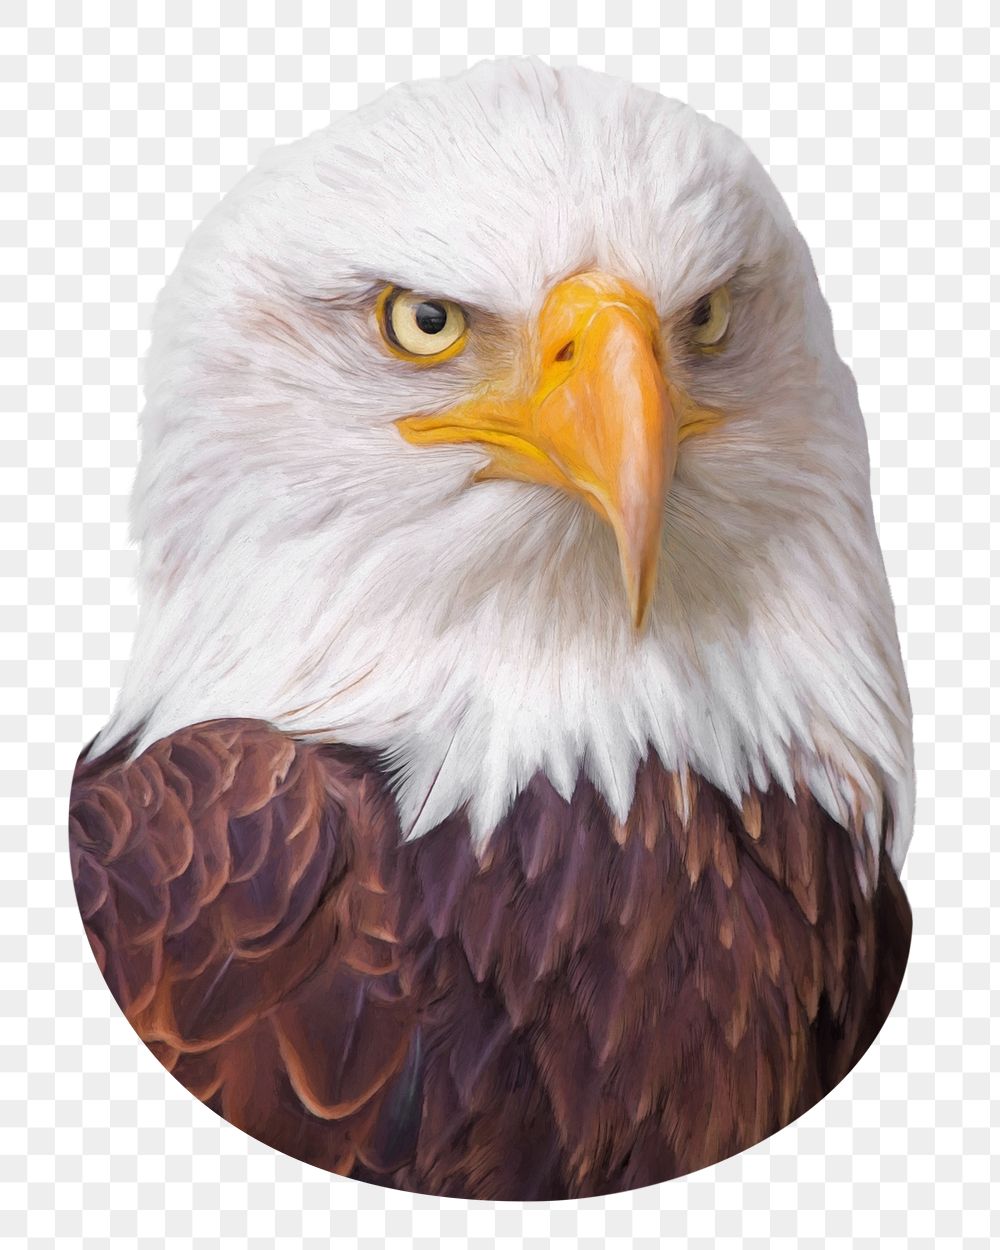 Bald eagle png sticker, transparent background